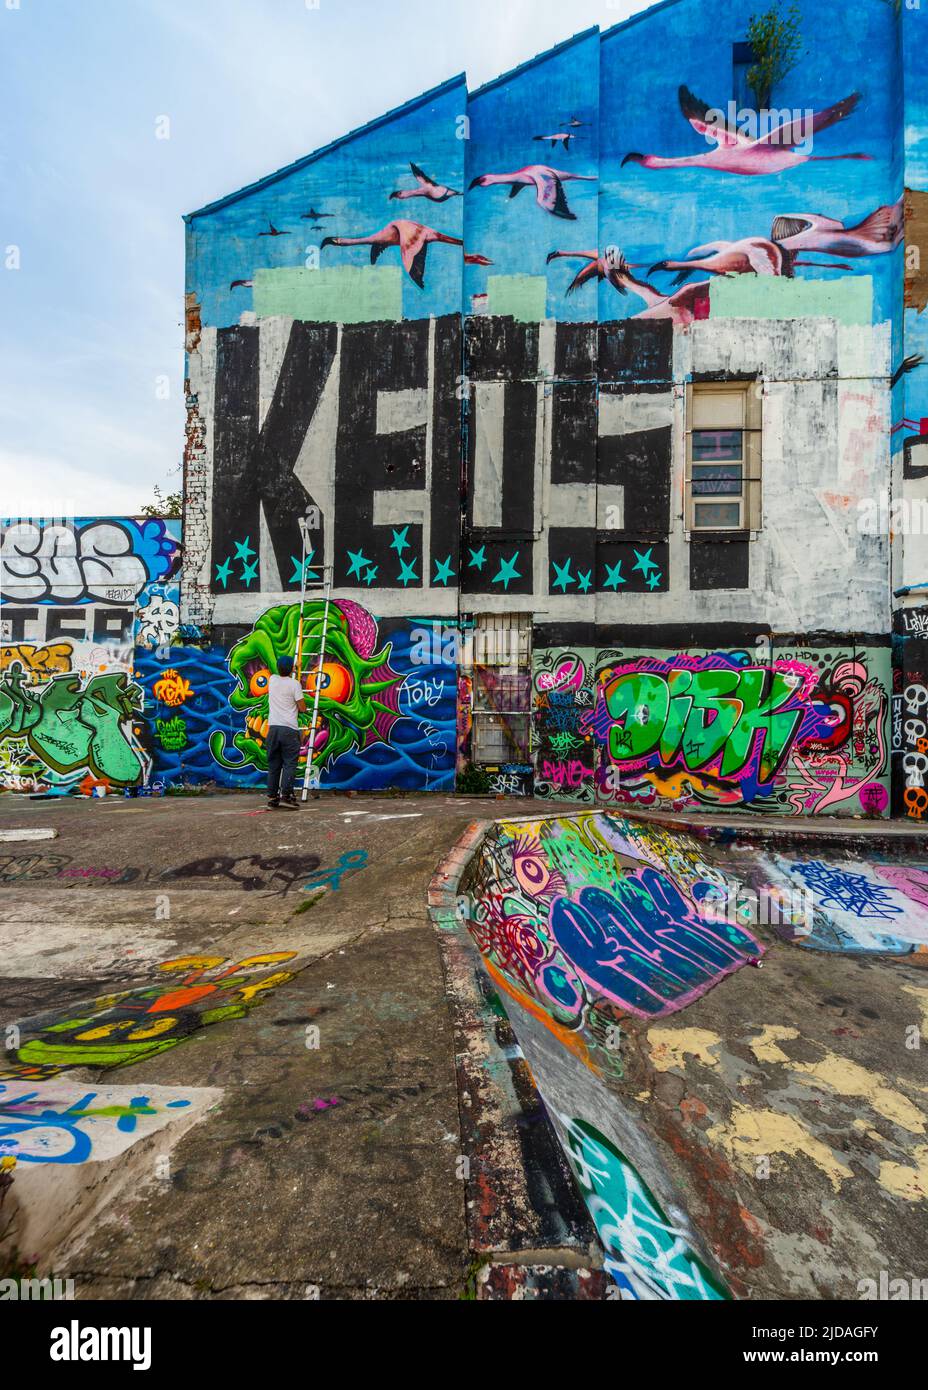 Mr KEOS, ein Straßenkünstler, der Farbe auf die Wand des Skateparks in der Jamaica Street, Baltic Triangle, Liverpool, Großbritannien, aufgetragen hat Stockfoto